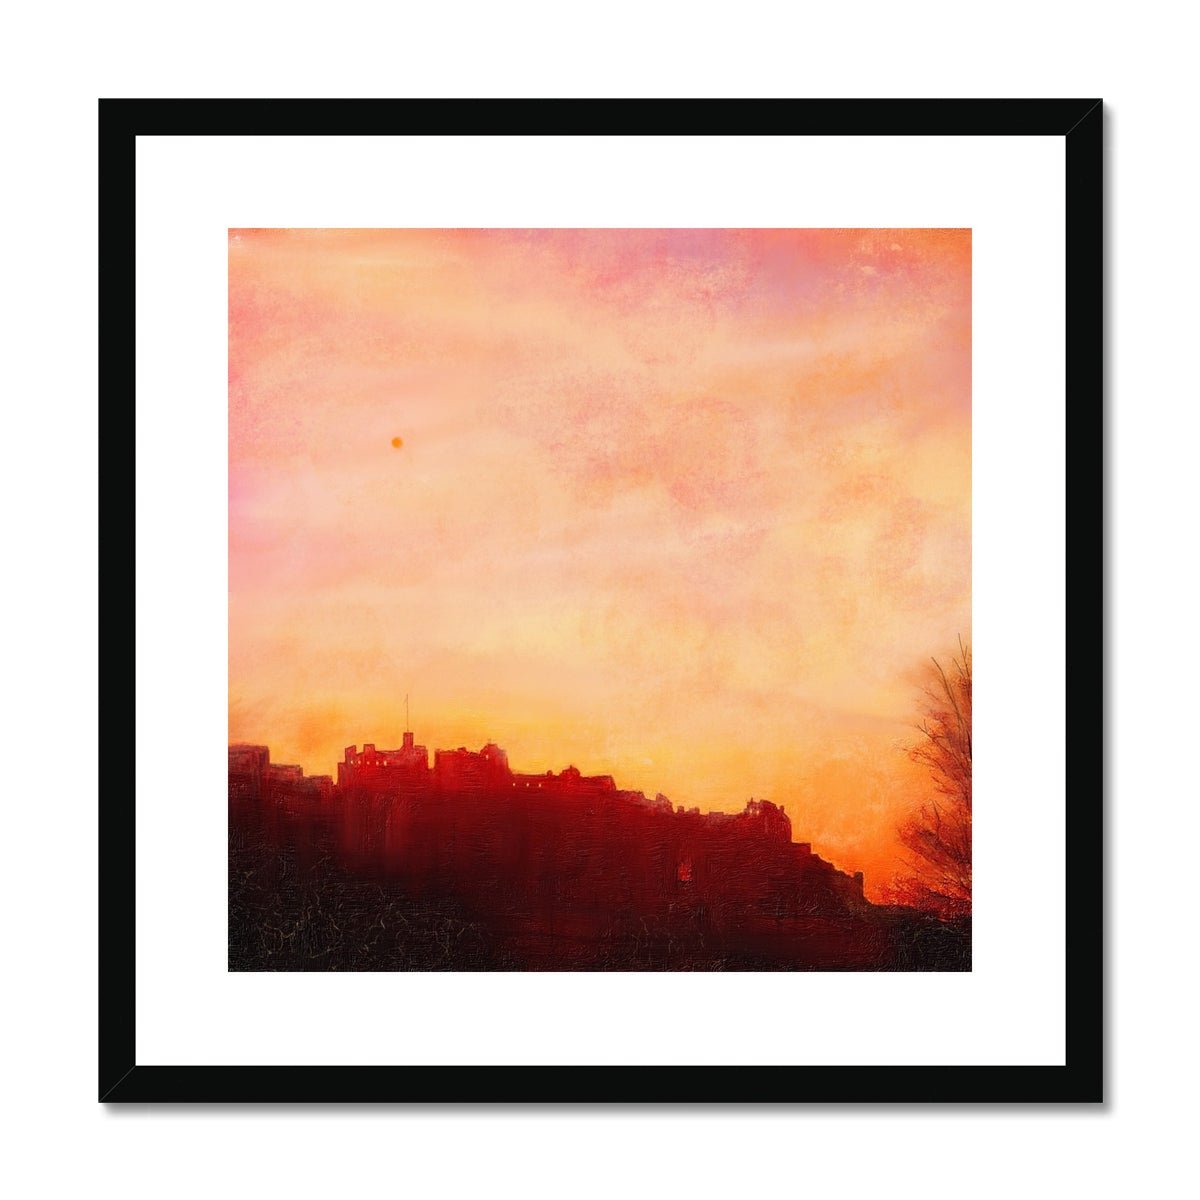 Edinburgh Castle Sunset Painting | Framed & Mounted Prints From Scotland-Framed & Mounted Prints-Edinburgh & Glasgow Art Gallery-20"x20"-Black Frame-Paintings, Prints, Homeware, Art Gifts From Scotland By Scottish Artist Kevin Hunter